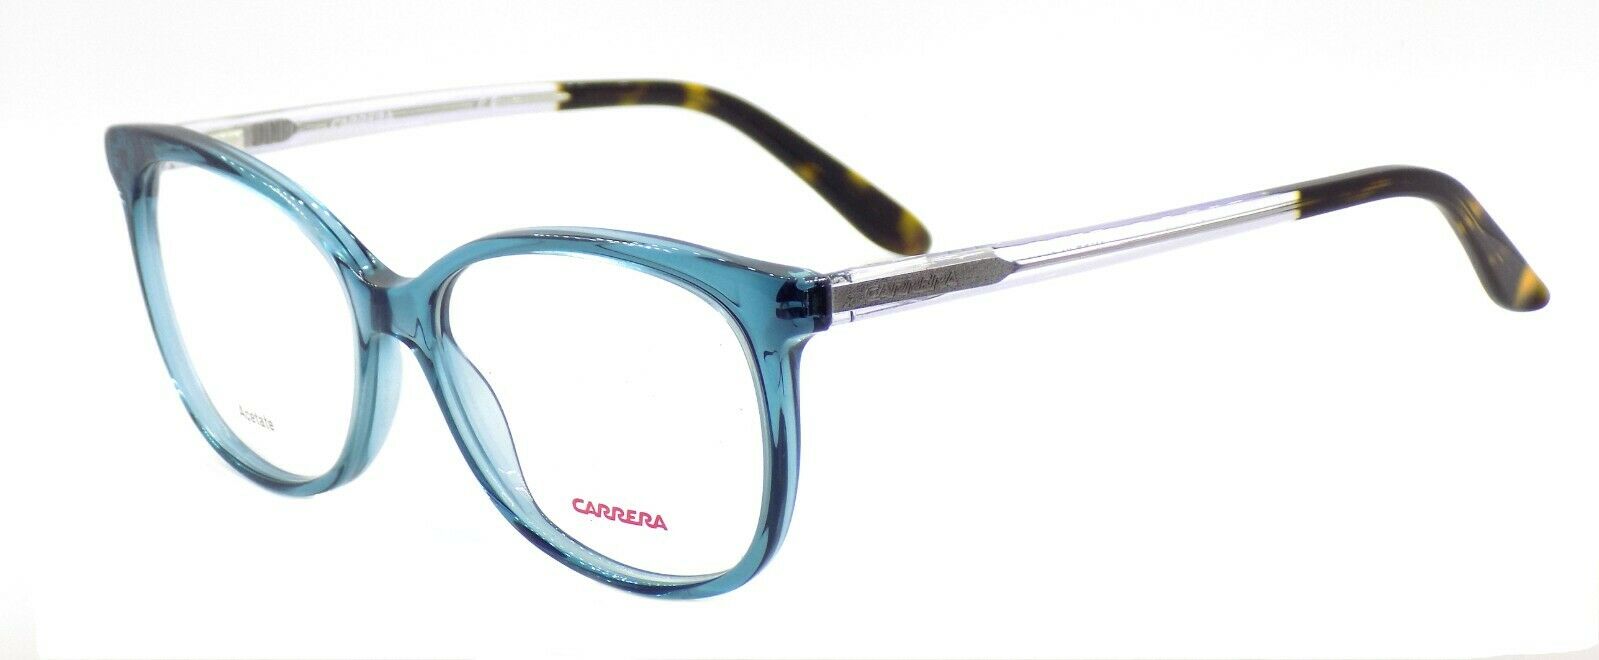 1-Carrera CA6648 QKP Women's Eyeglasses Frames 53-15-140 Teal / Lilac + CASE-762753671509-IKSpecs